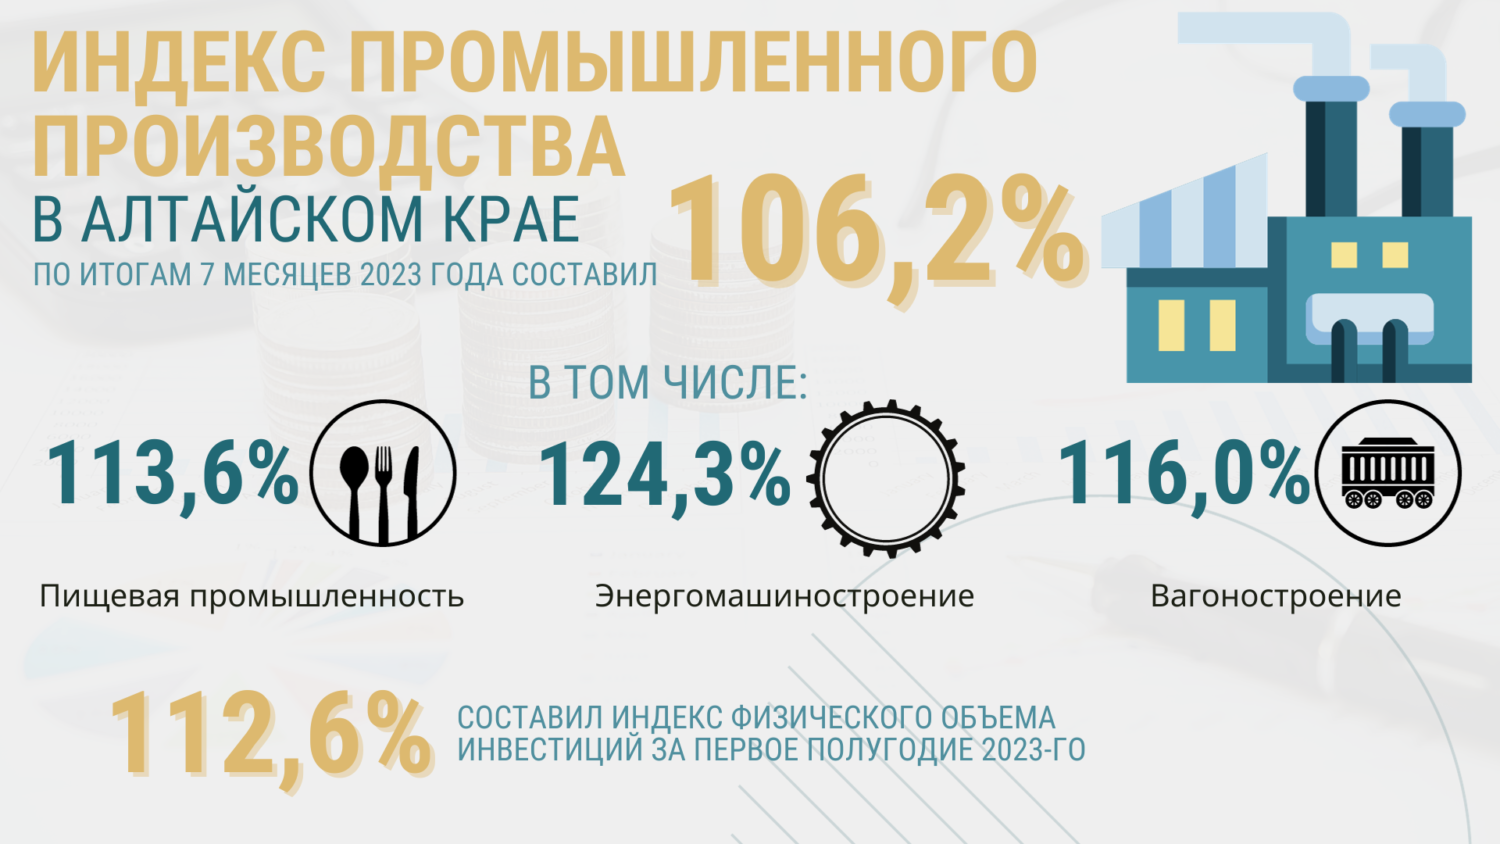 На что Алтайский край потратит дополнительно заработанные 3,5 млрд рублей?